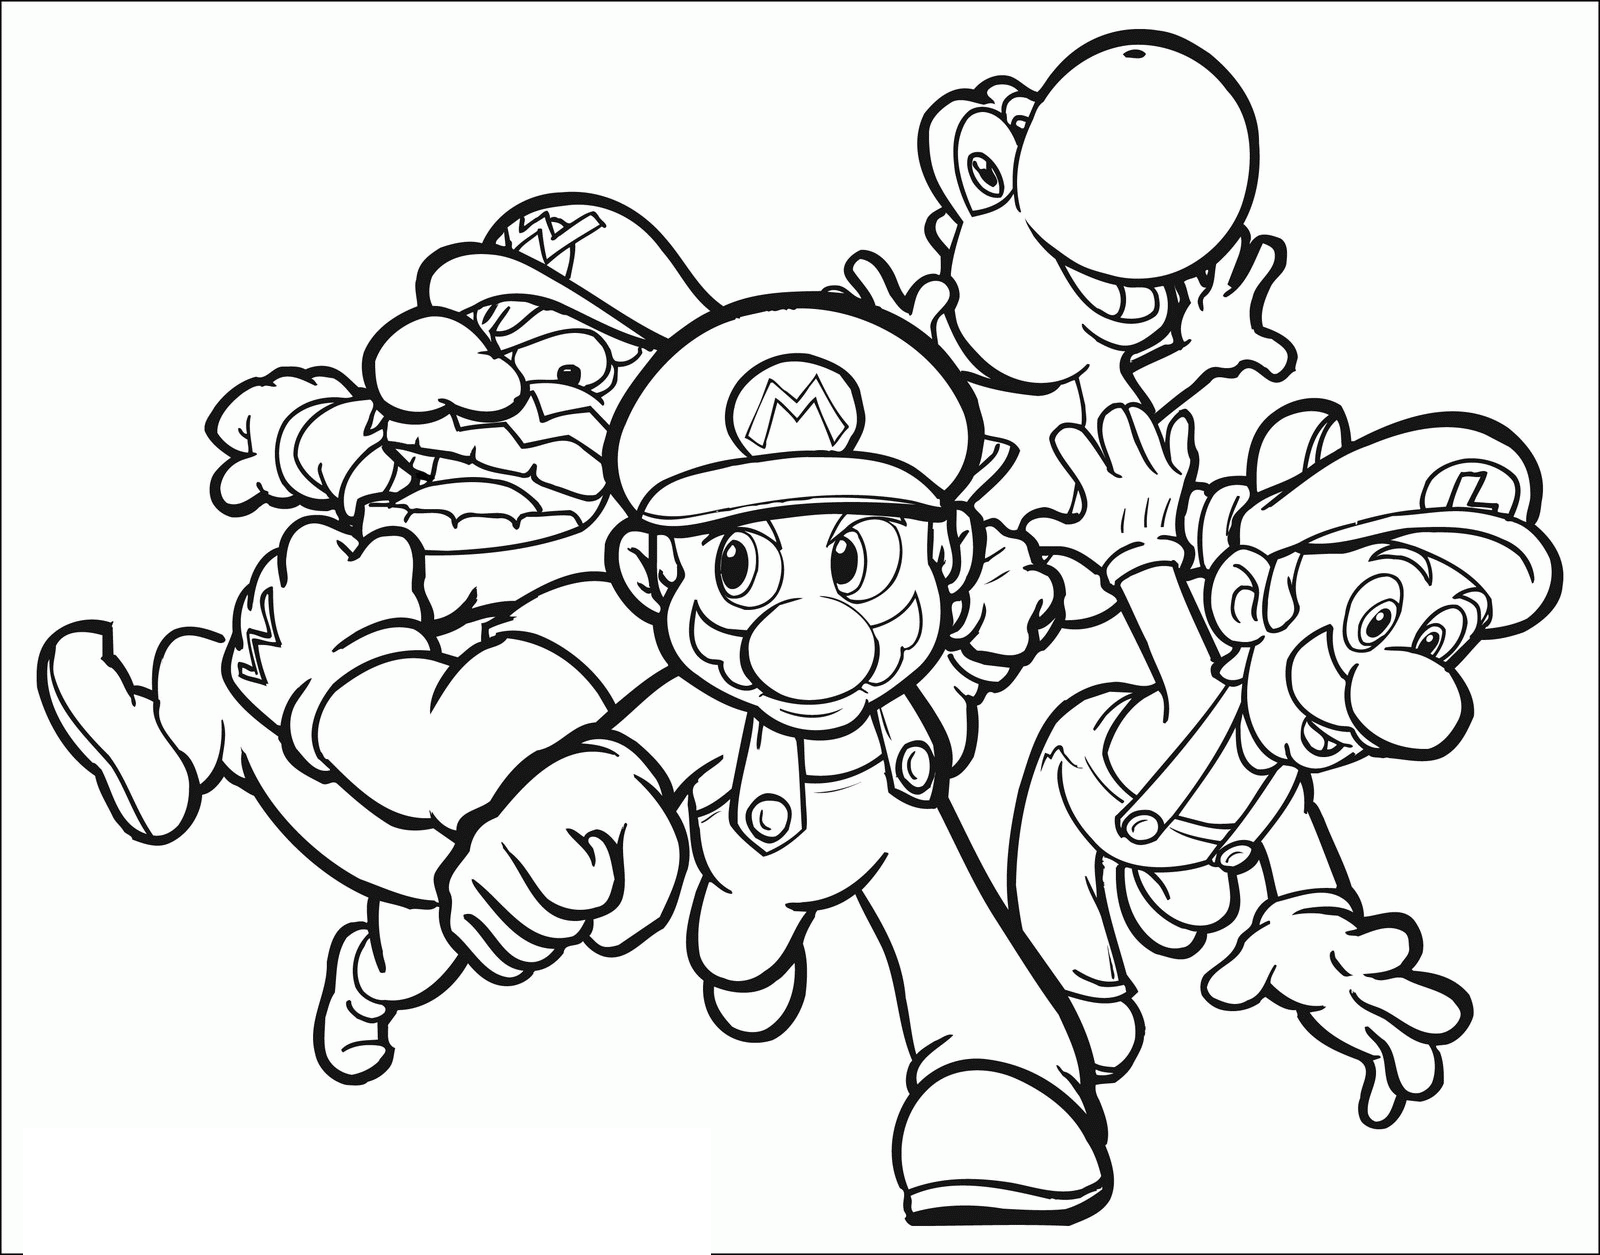 Dibujo de Mario para colorear, con Luigi, Wario y Yoshi